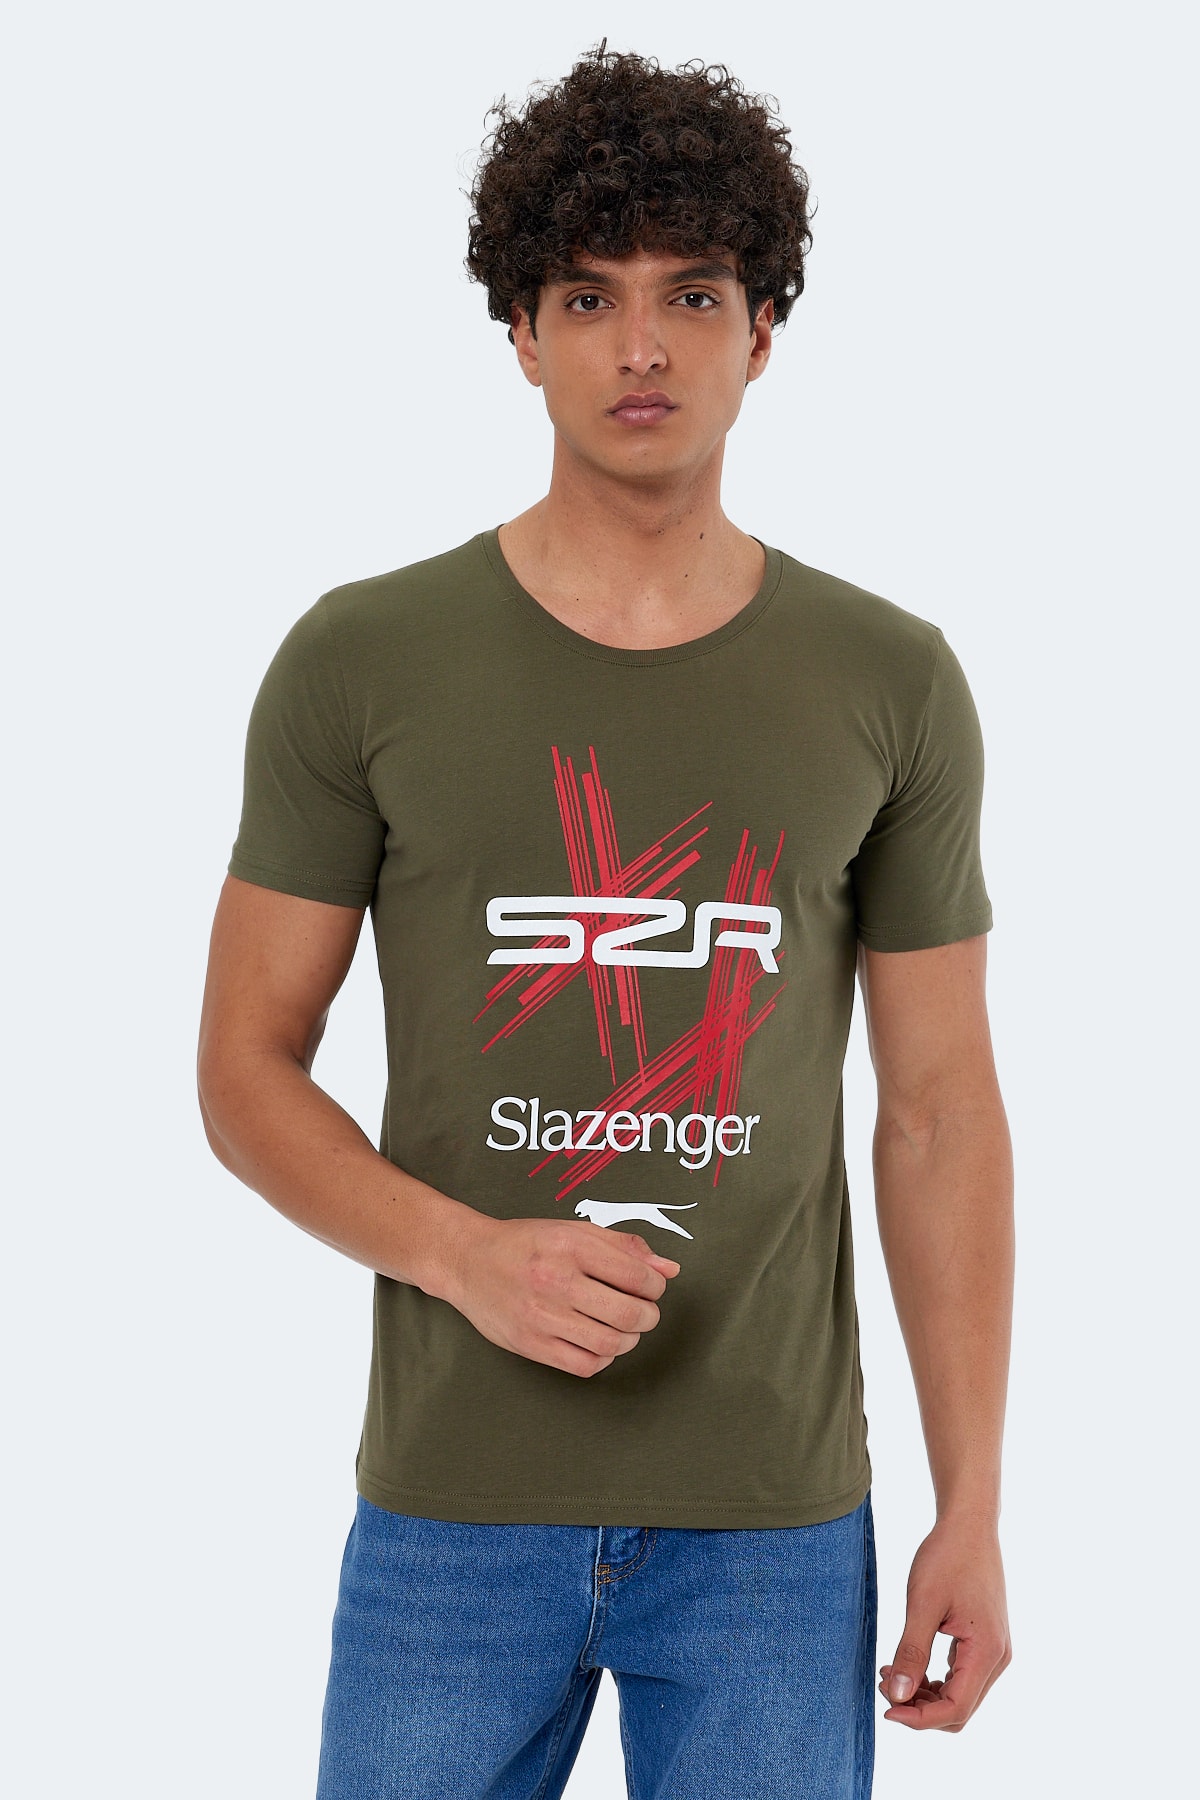 Slazenger Kasur Men's T-shirt Khaki